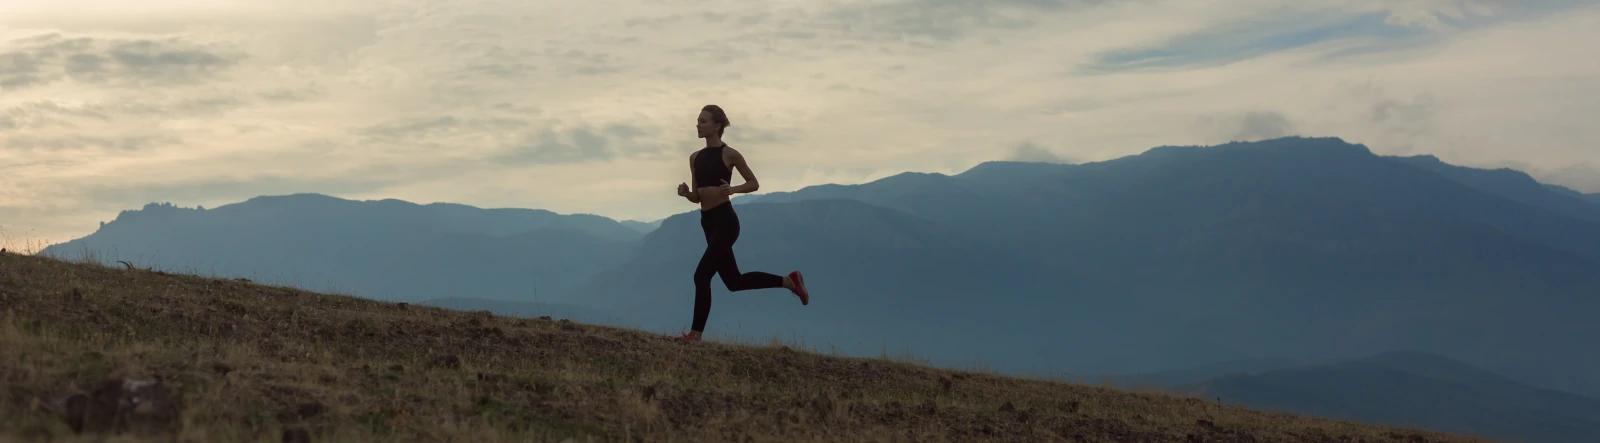 a woman running up a grassy hill